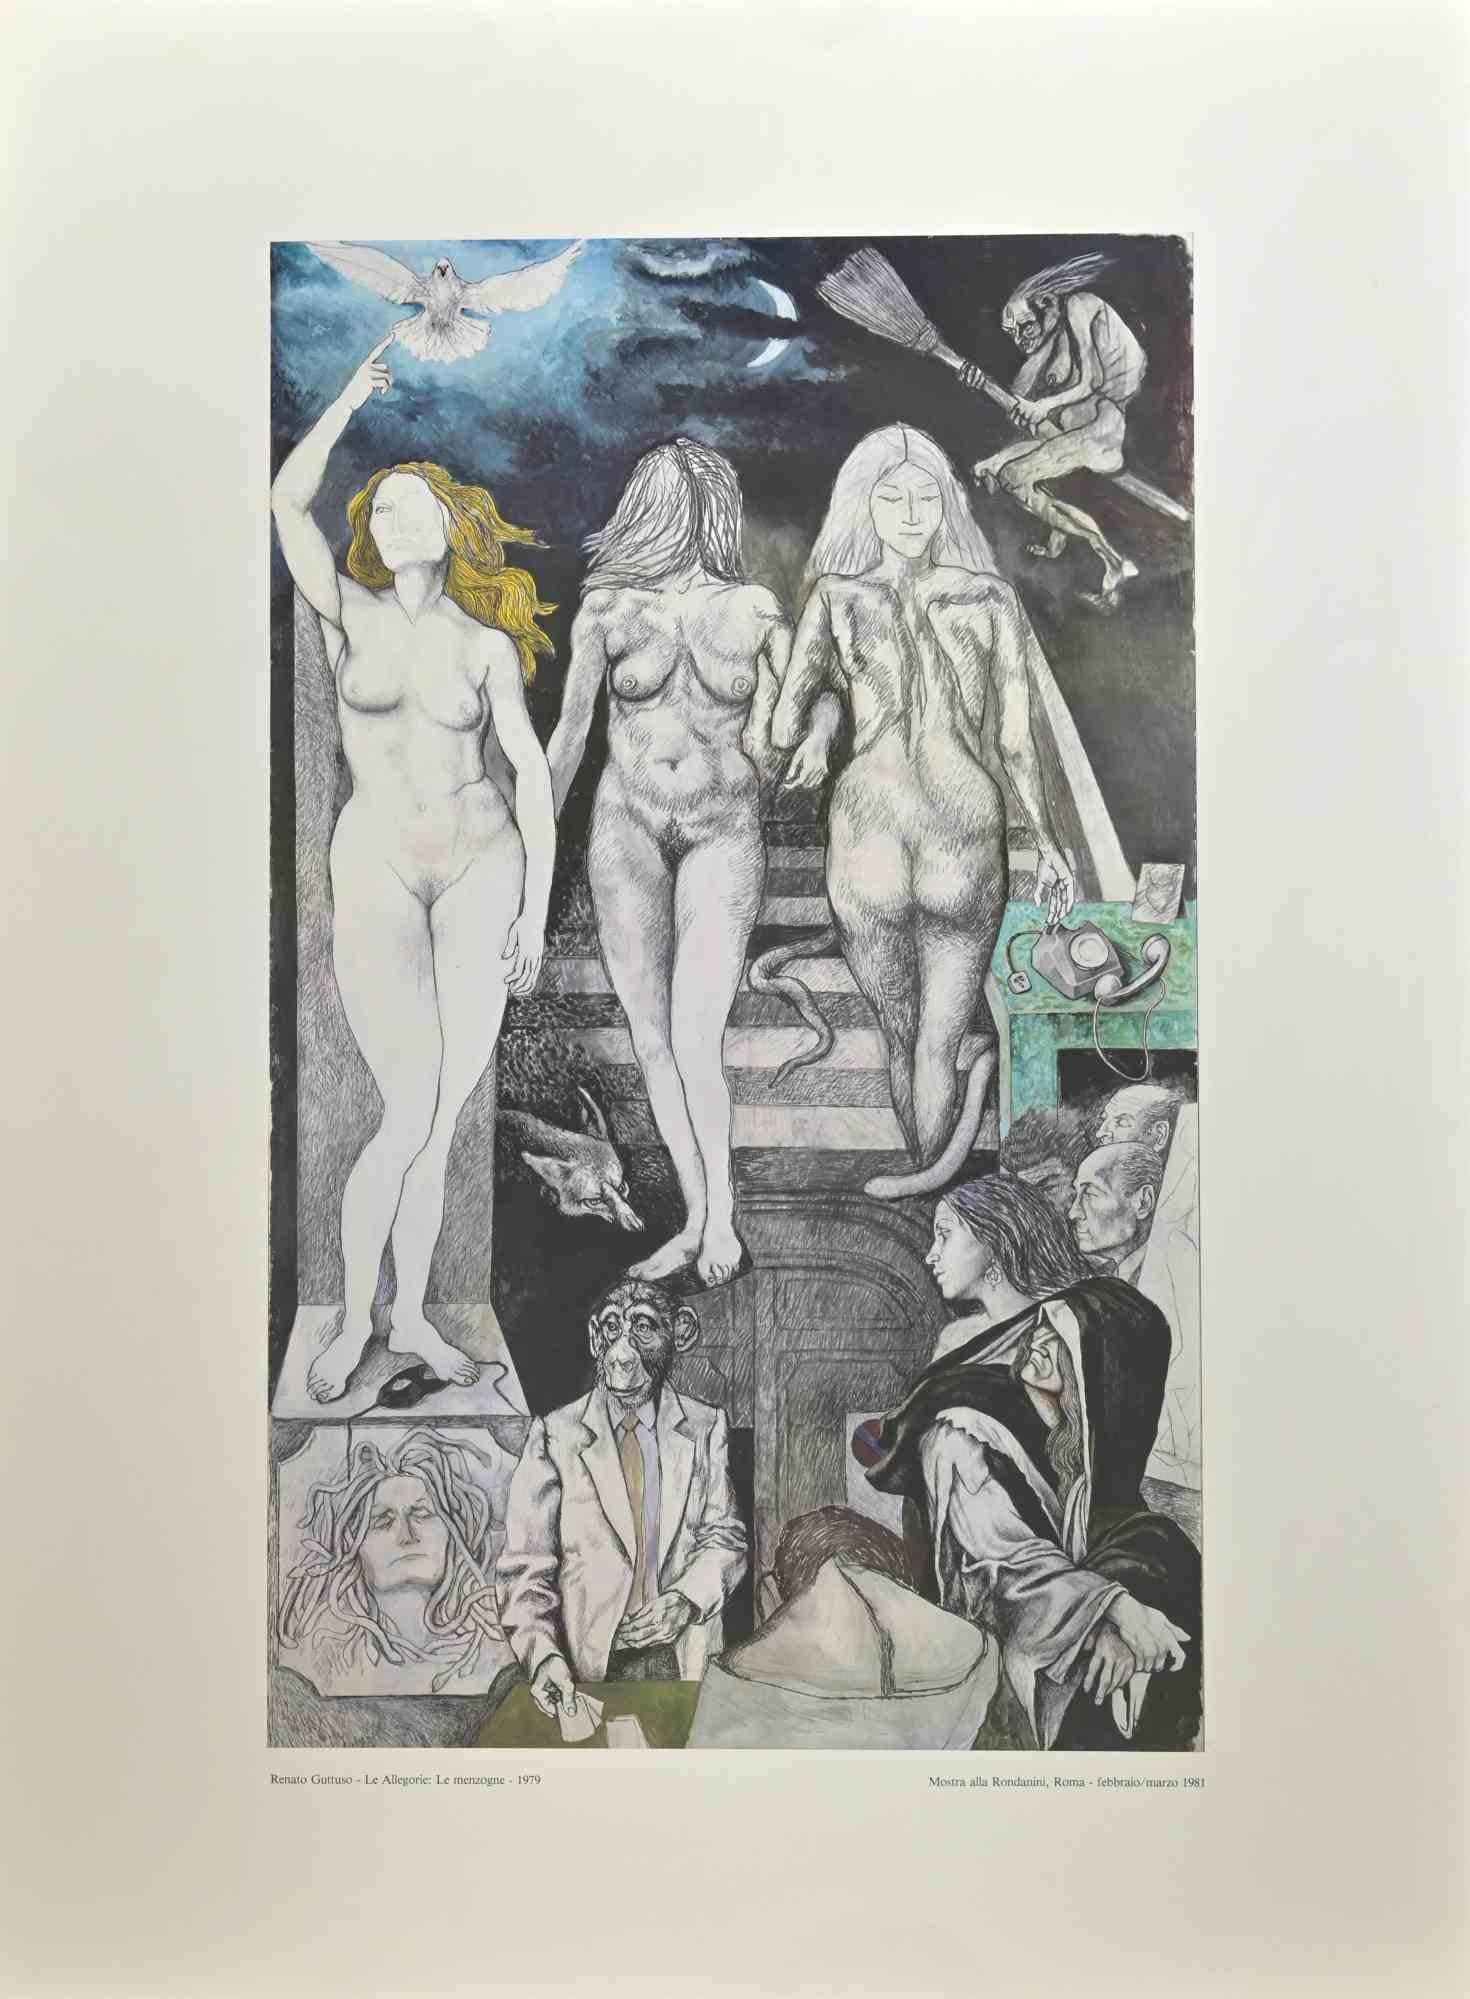 Allegorien: Lies ist ein Vintage-Poster, das nach dem italienischen Künstler  Renato Guttuso  (Bagheria, 1911 - Rom, 1987) in  1981.

Farbiger Offsetdruck auf Papier. 

Das Plakat entstand anlässlich der Ausstellung, die 1981 in der Galleria